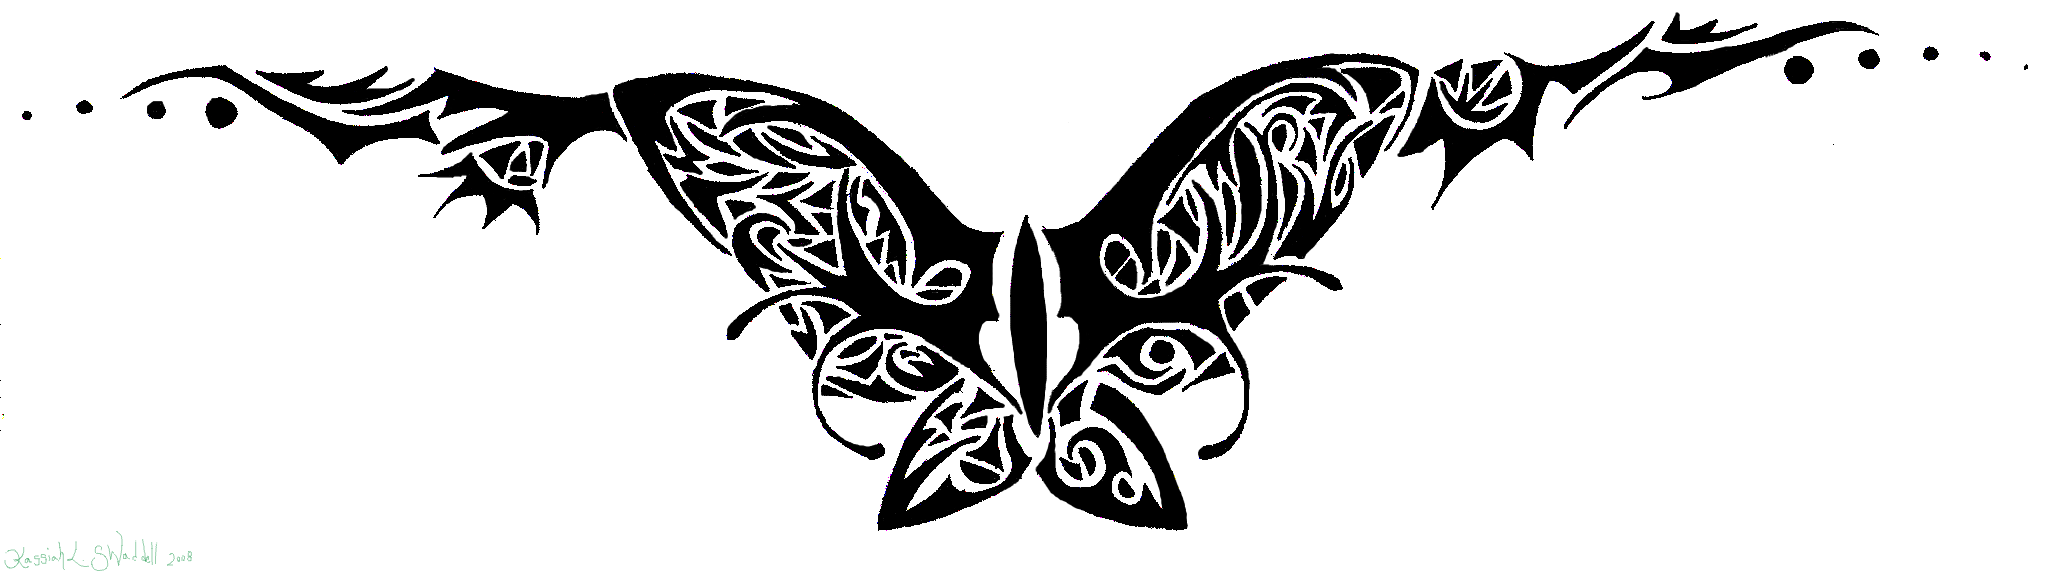 Fancy Butterfly Tramp Stamp Tattoo By Ryvienna On Deviantart, Tramp Stamp T...